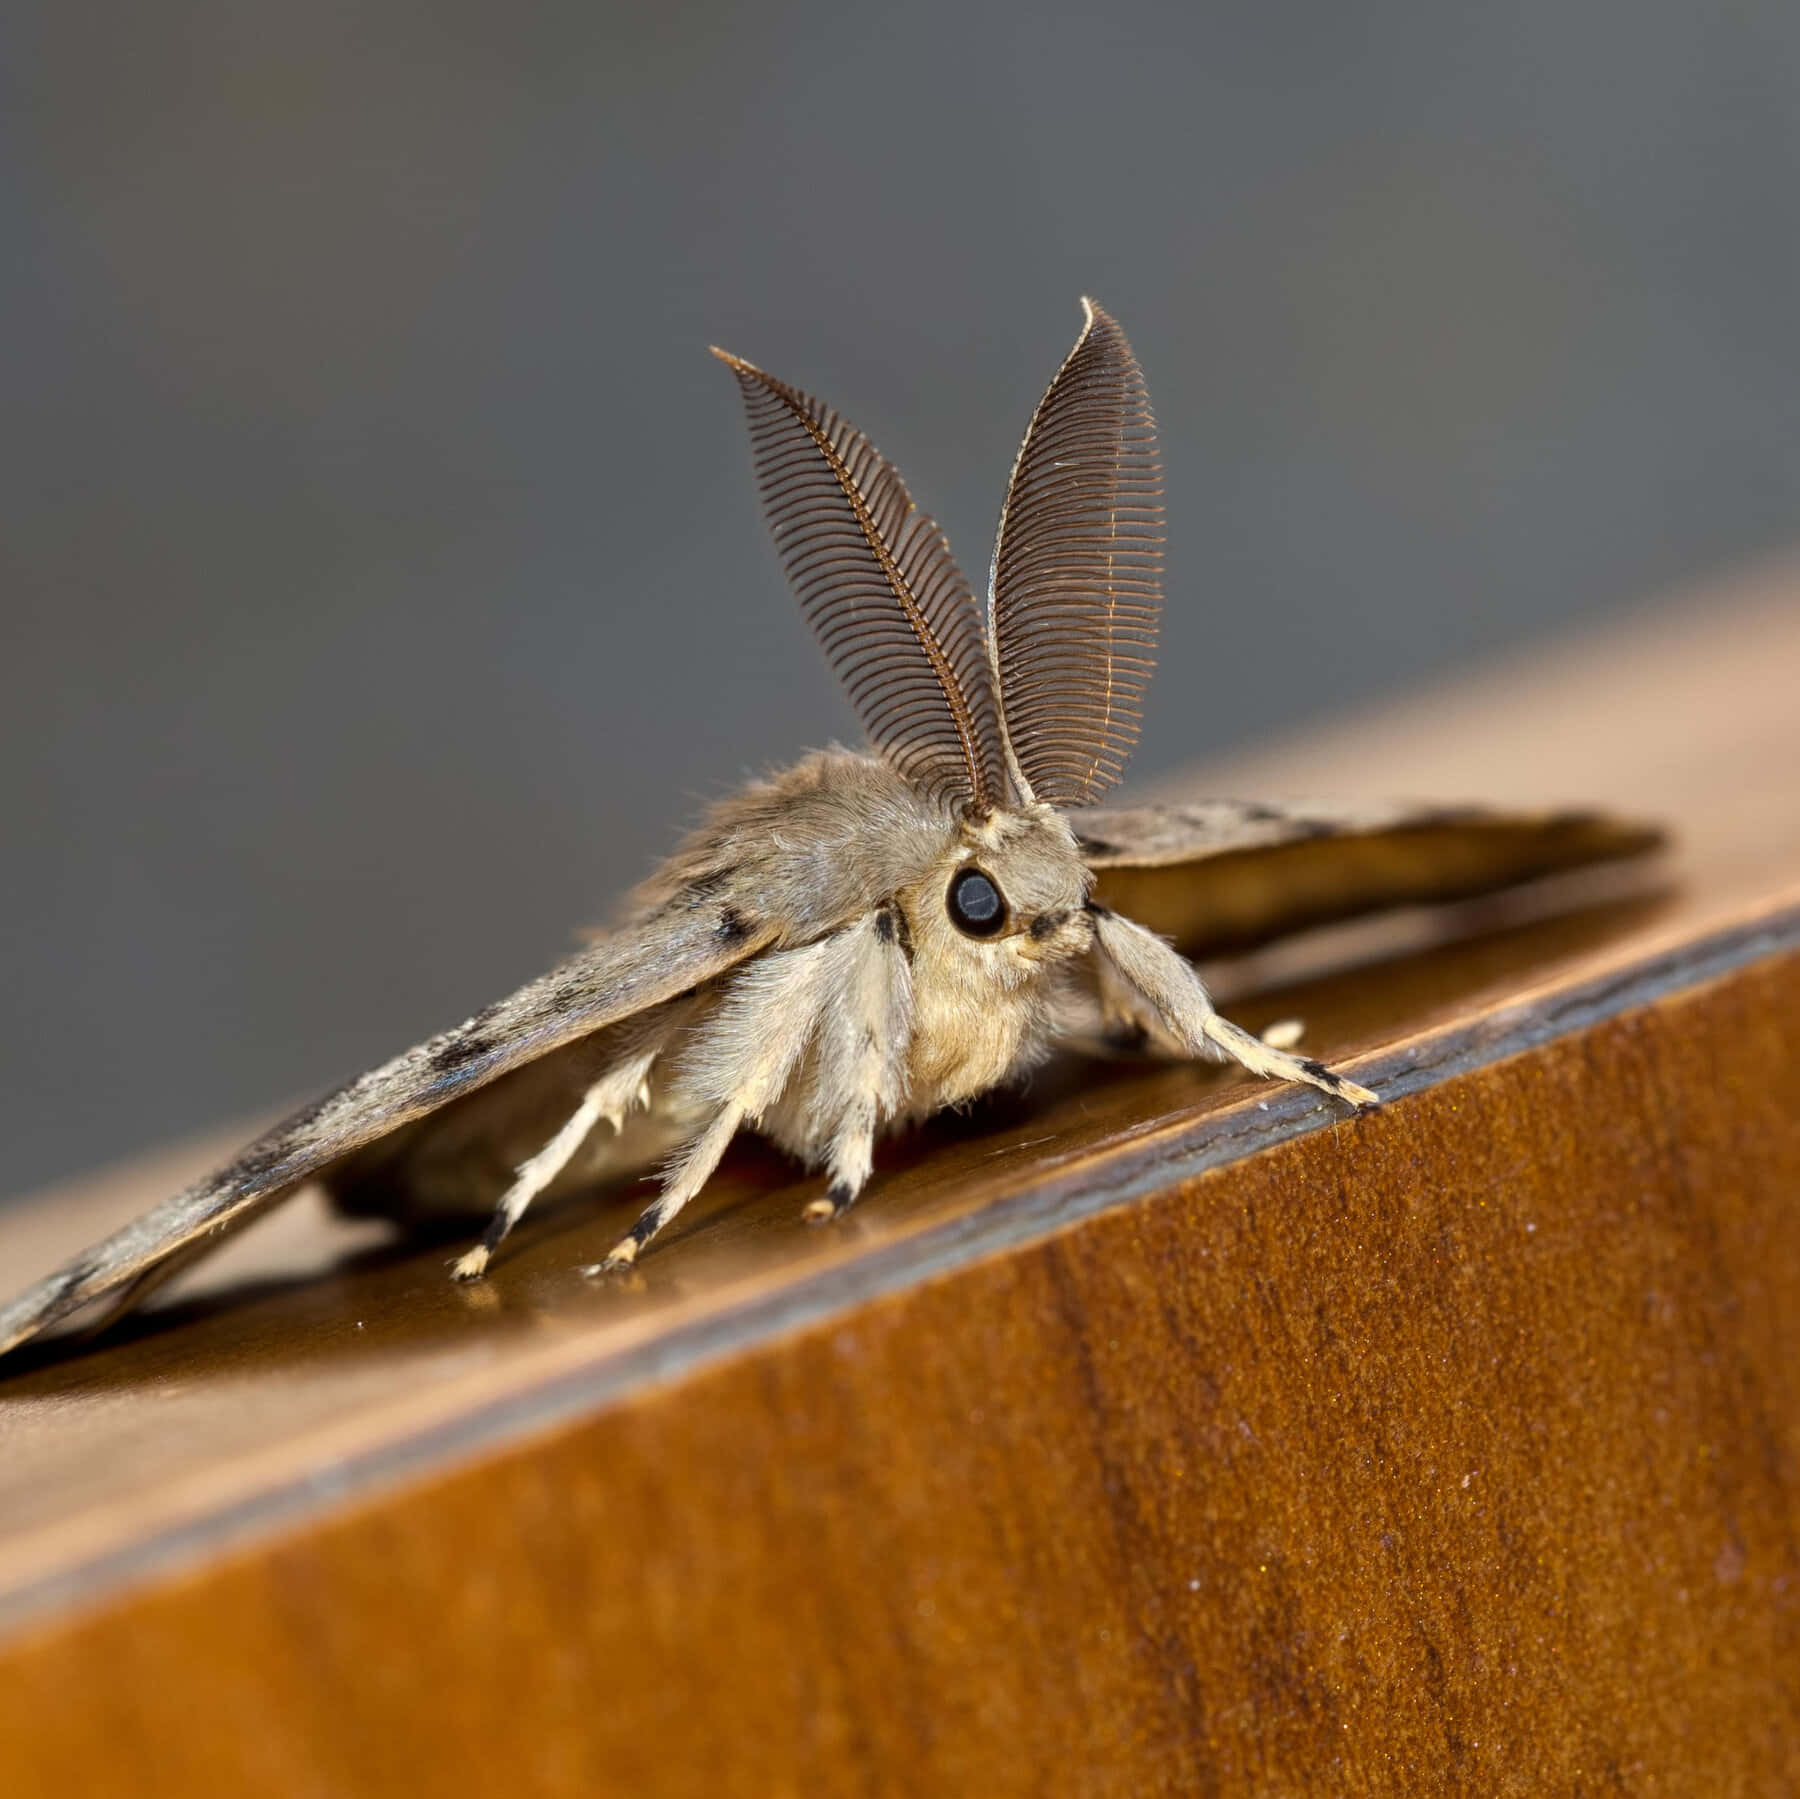 Closeup of a Moth